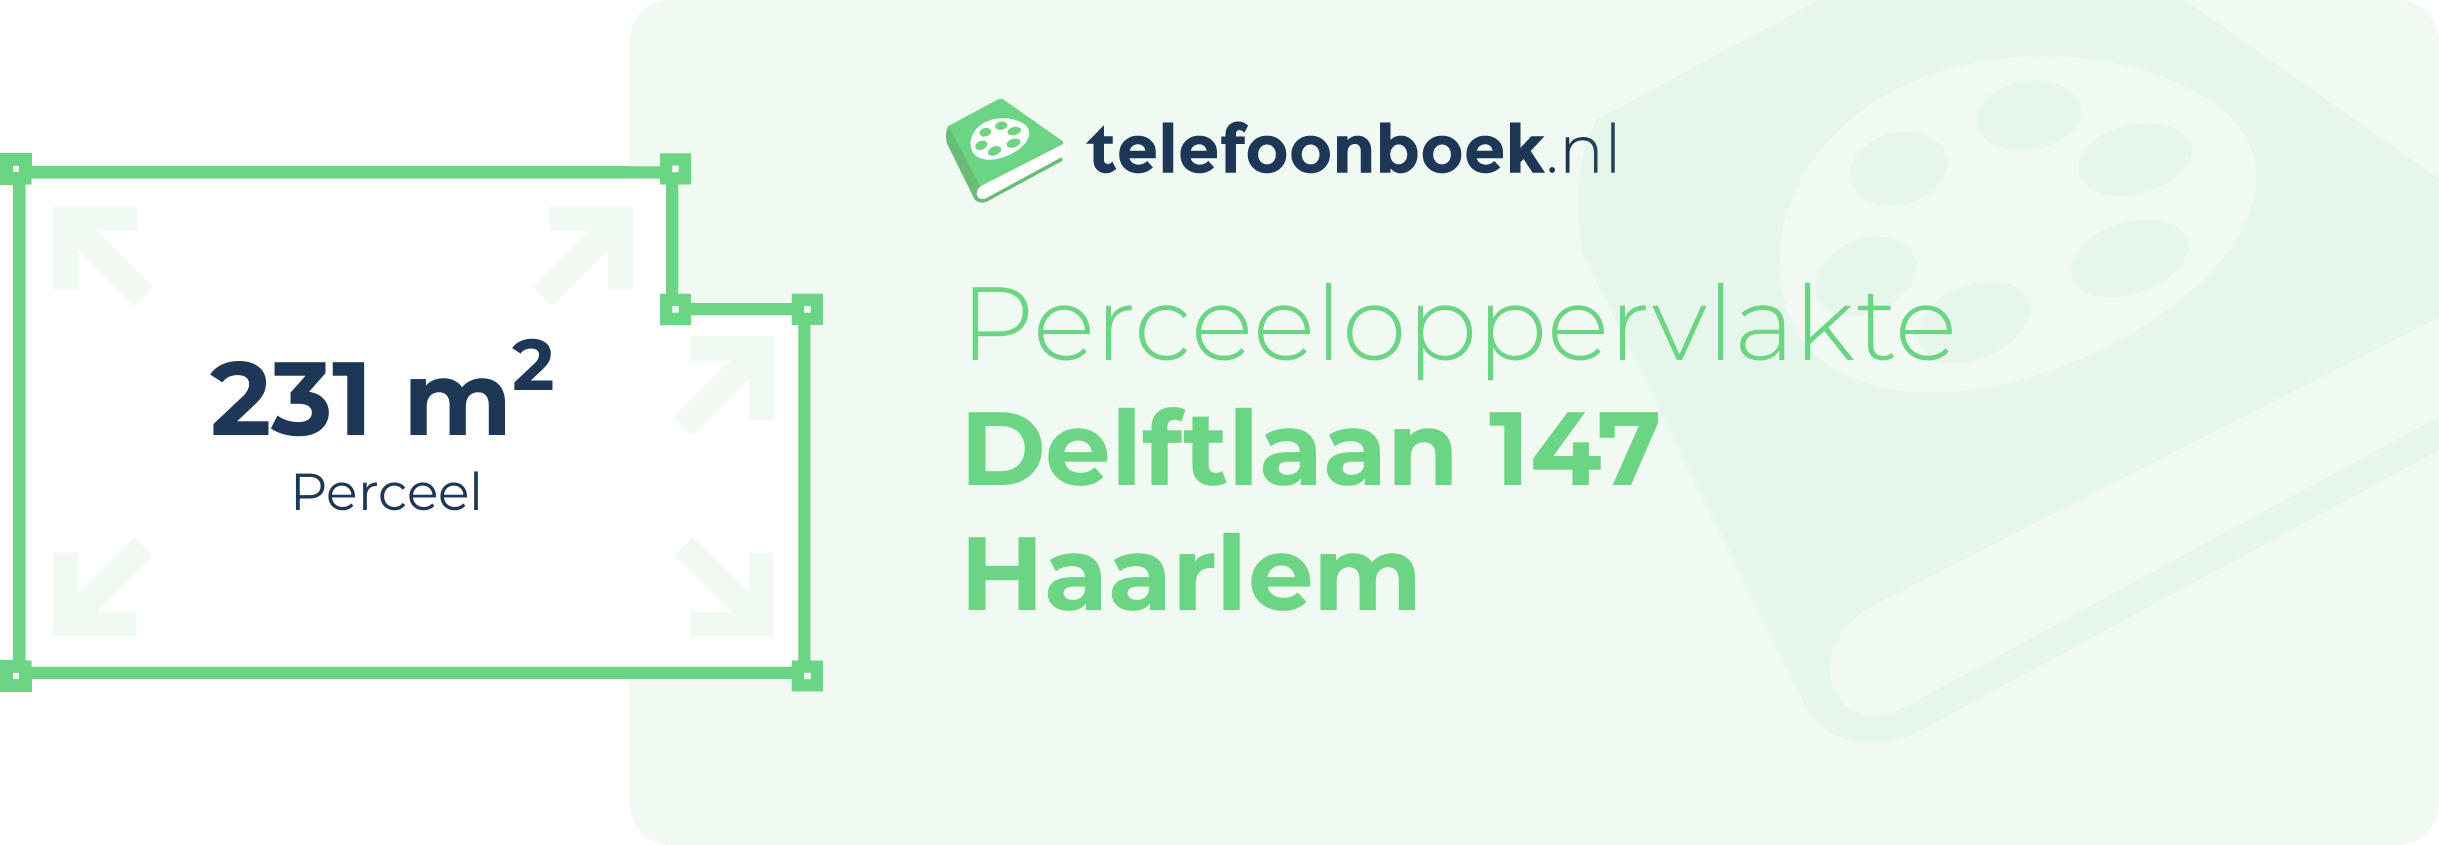 Perceeloppervlakte Delftlaan 147 Haarlem